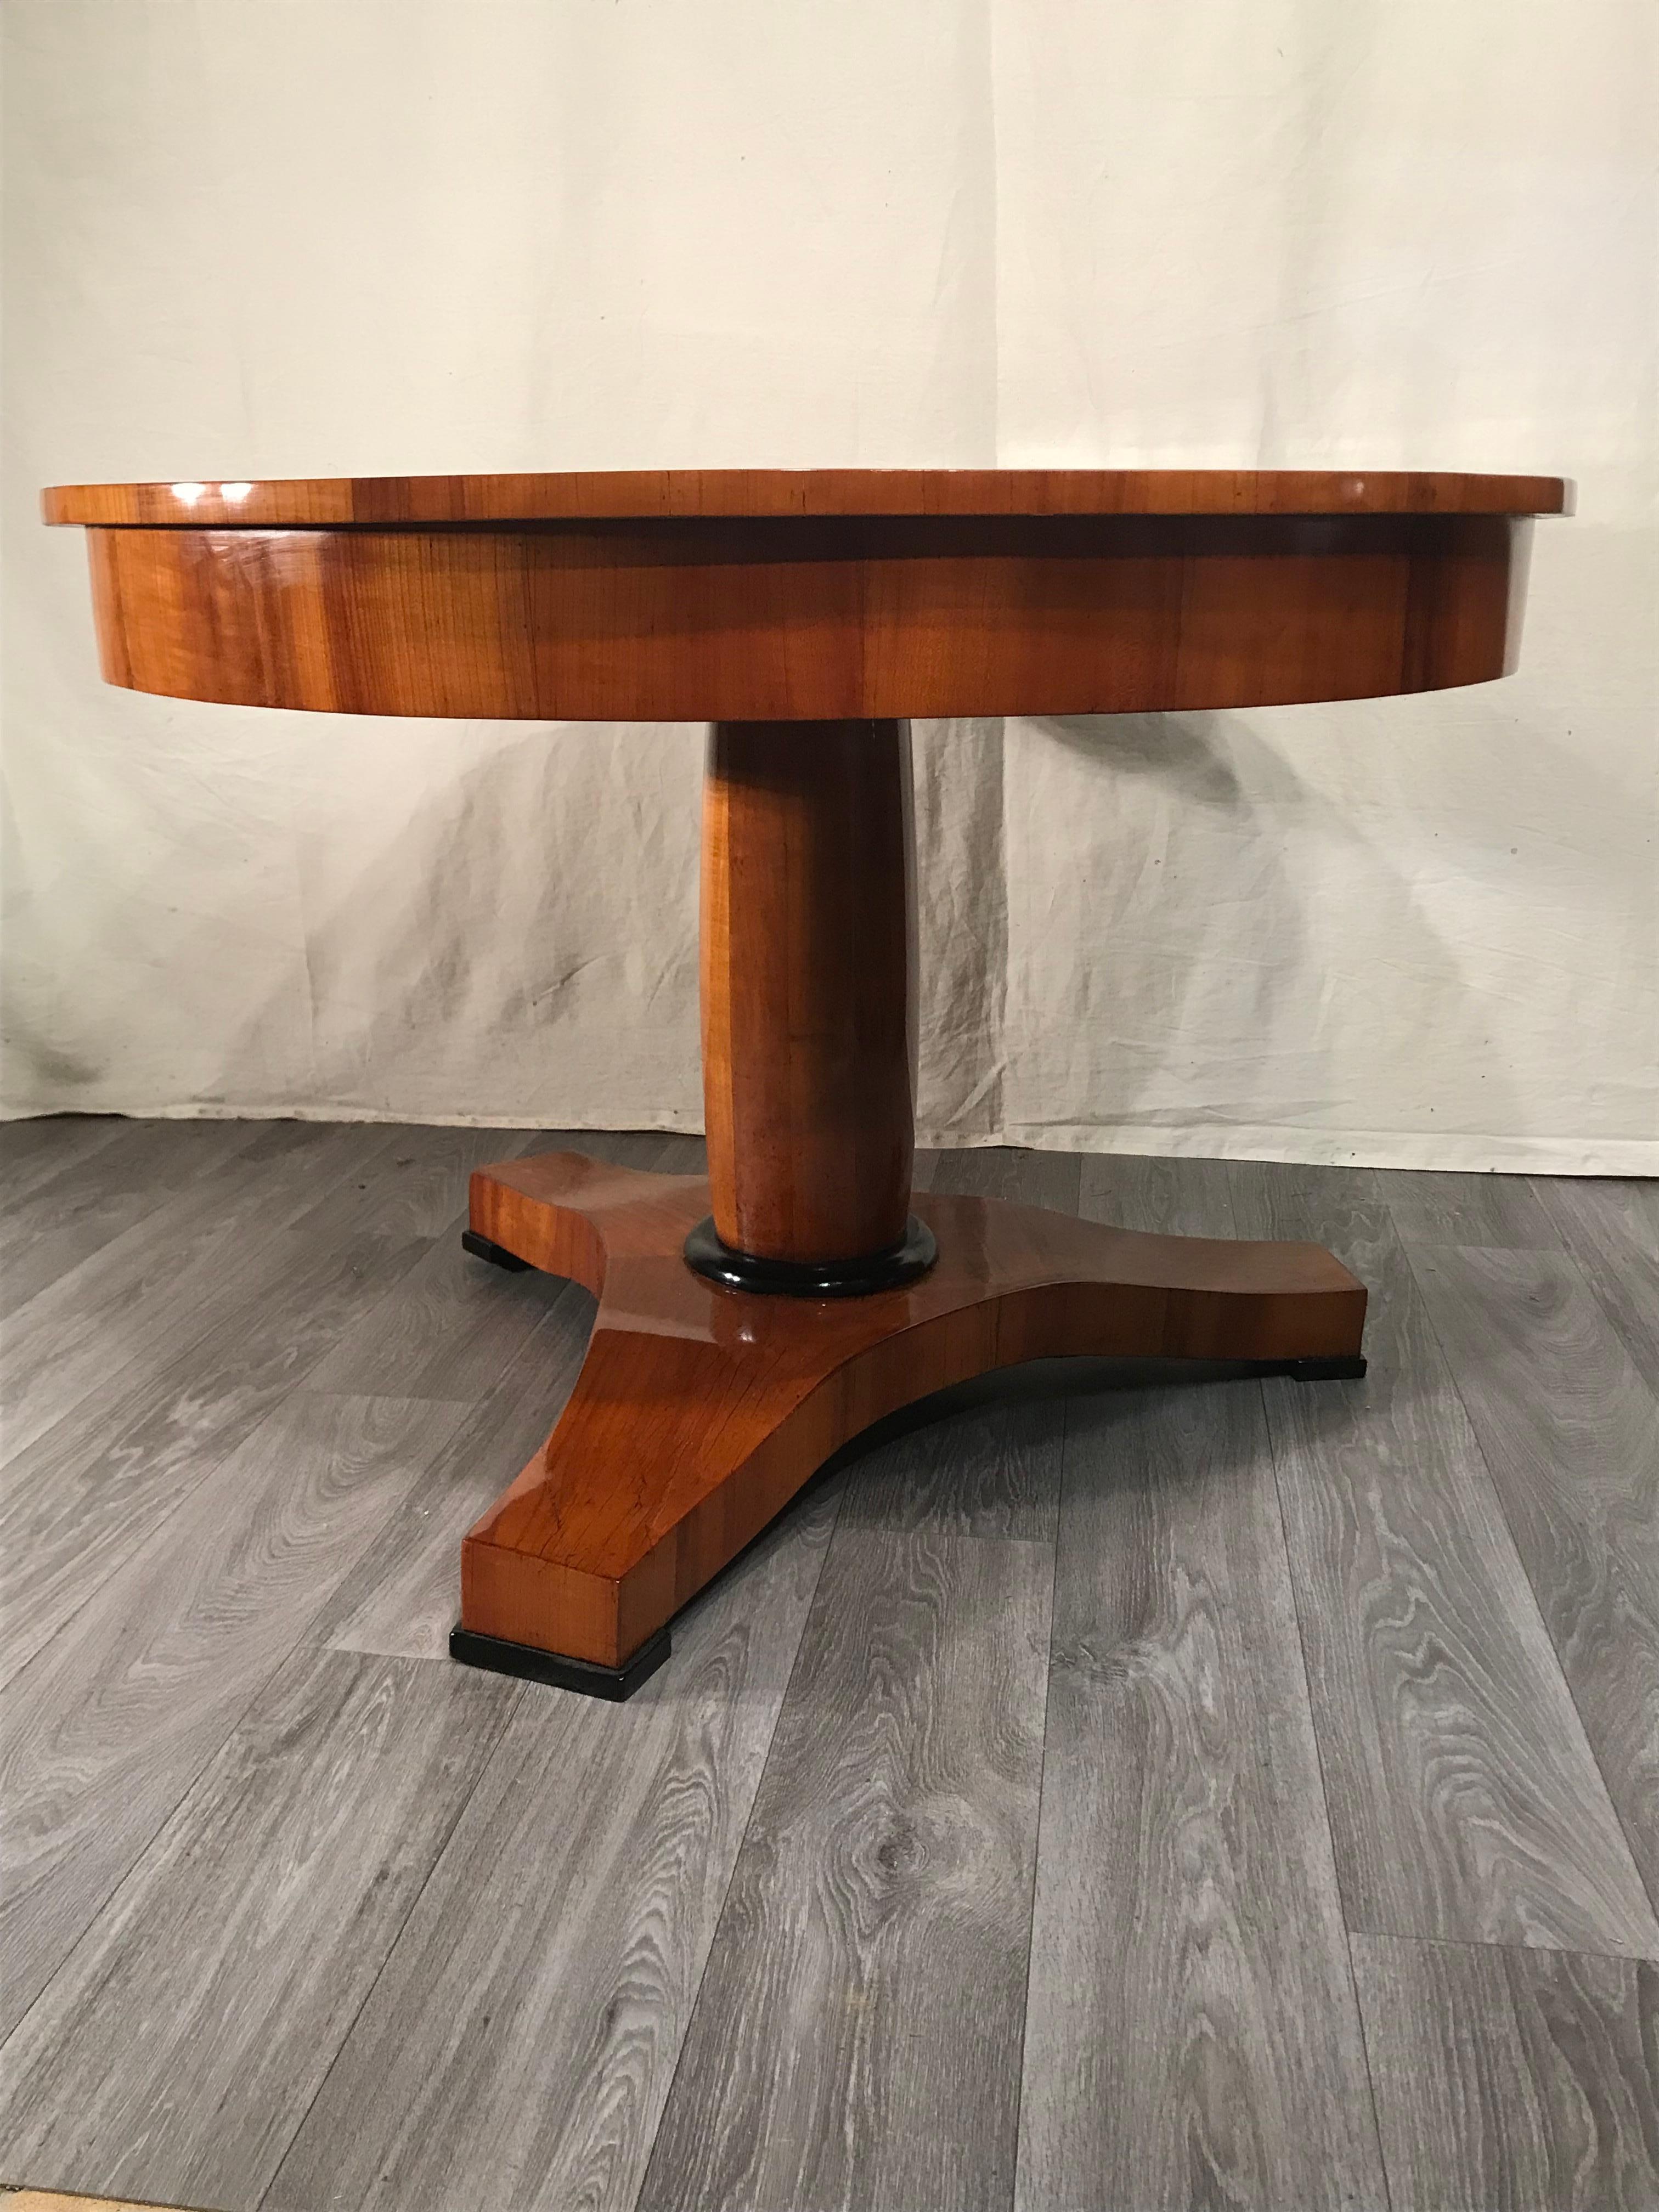 Dieser originale Biedermeier-Tisch stammt aus der Zeit um 1820-30 und kommt aus Süddeutschland. Der Tisch hat eine zentrale Säule, die auf einem dreifüßigen Sockel steht. Alle Teile sind mit einem sehr schönen Kirschbaumfurnier versehen. Die Platte